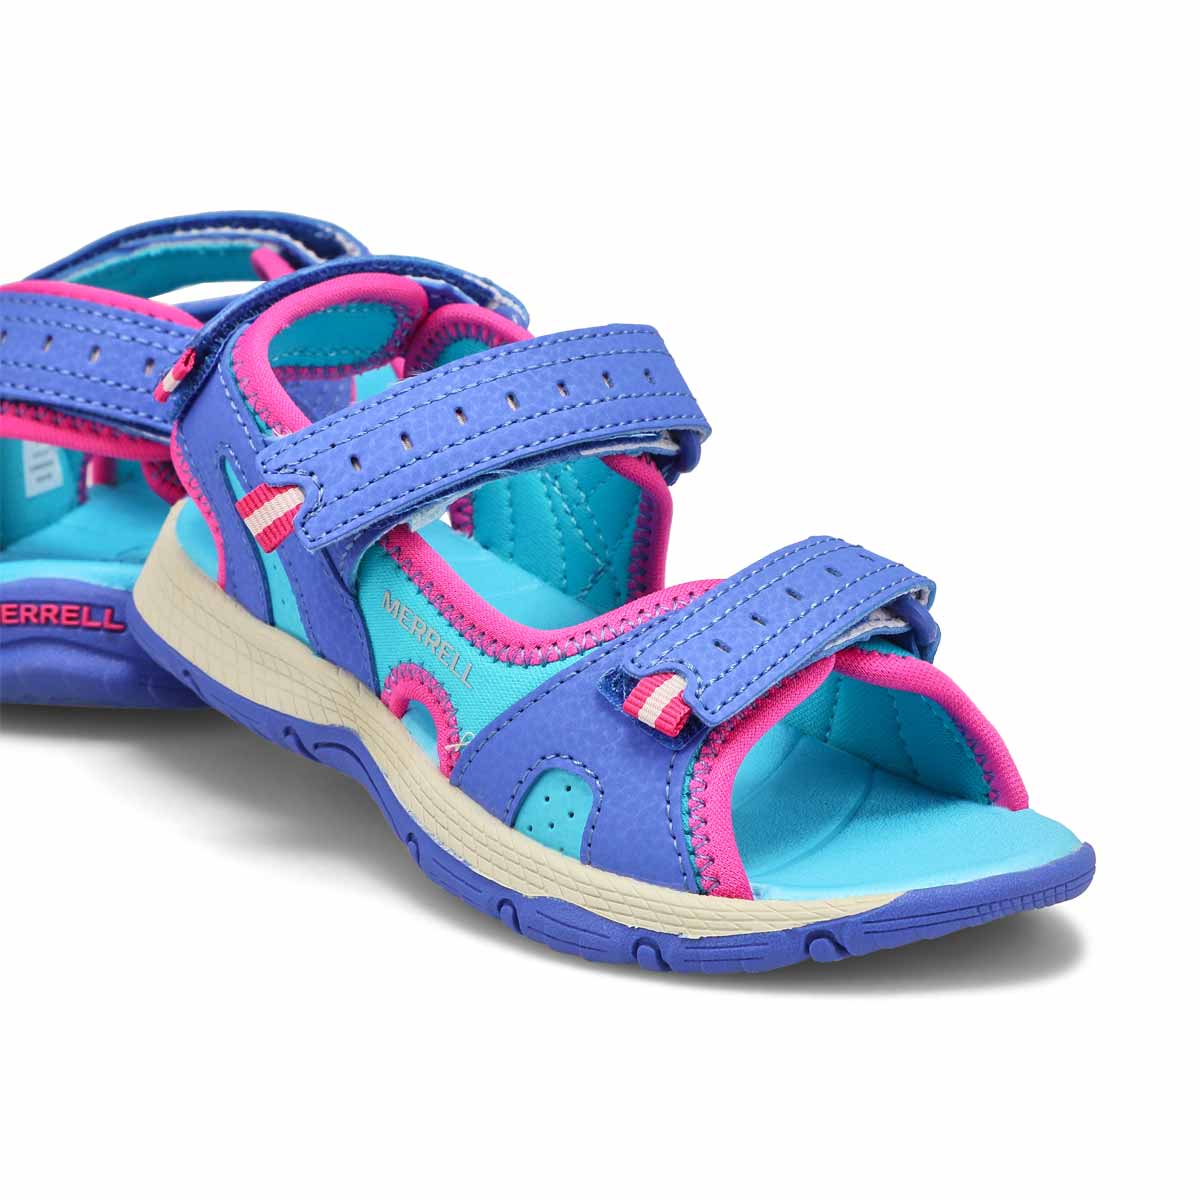 Sandale sport PANTHER 2.0, filles